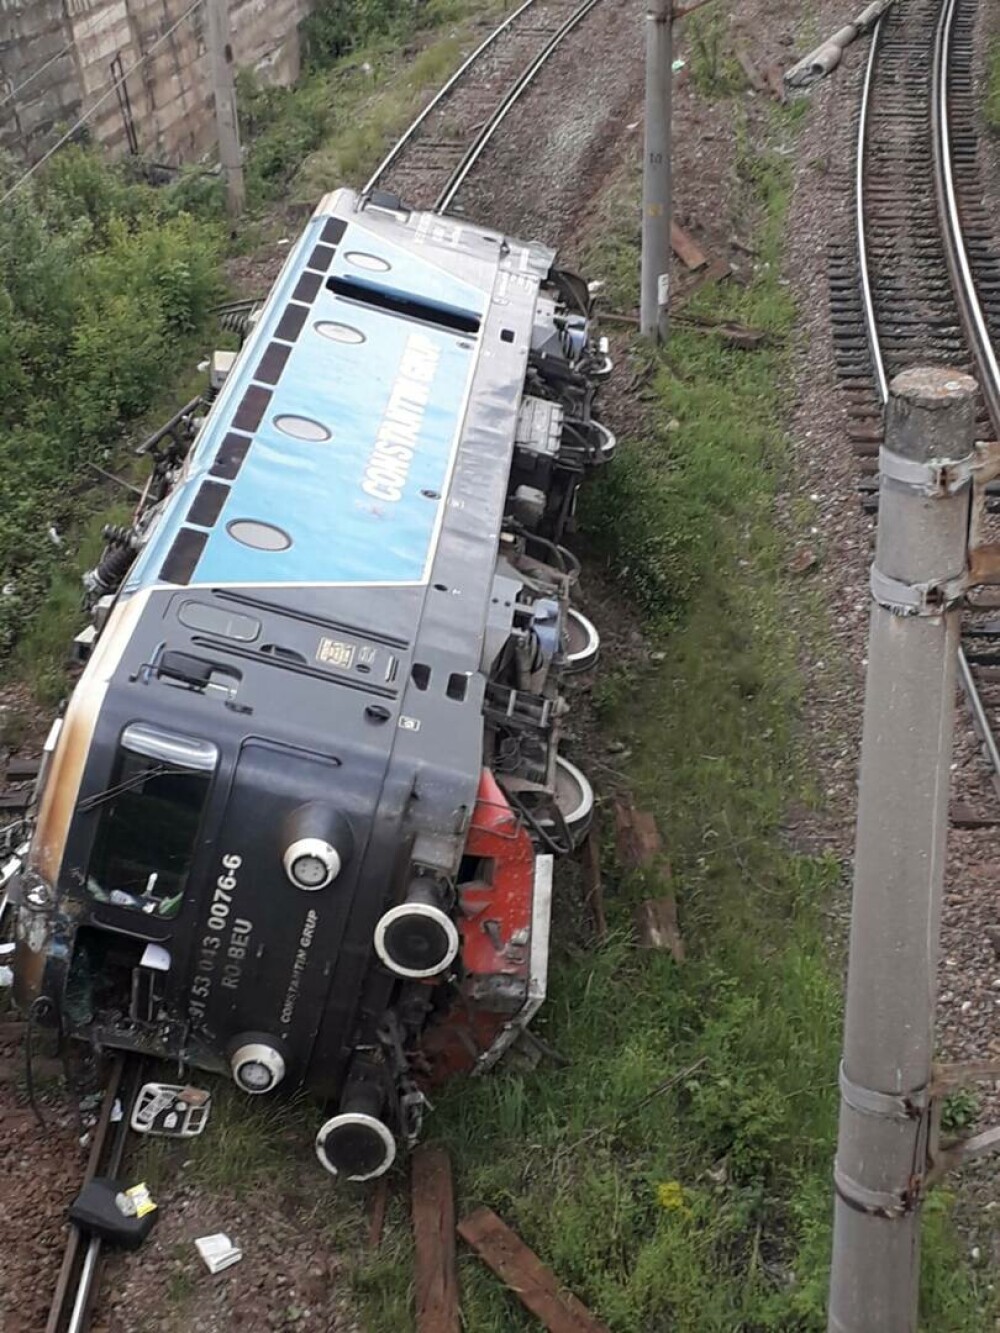 Locomotivă răsturnată pe calea ferată în județul Hunedoara. Mecanicul a fost transportat la spital - Imaginea 2